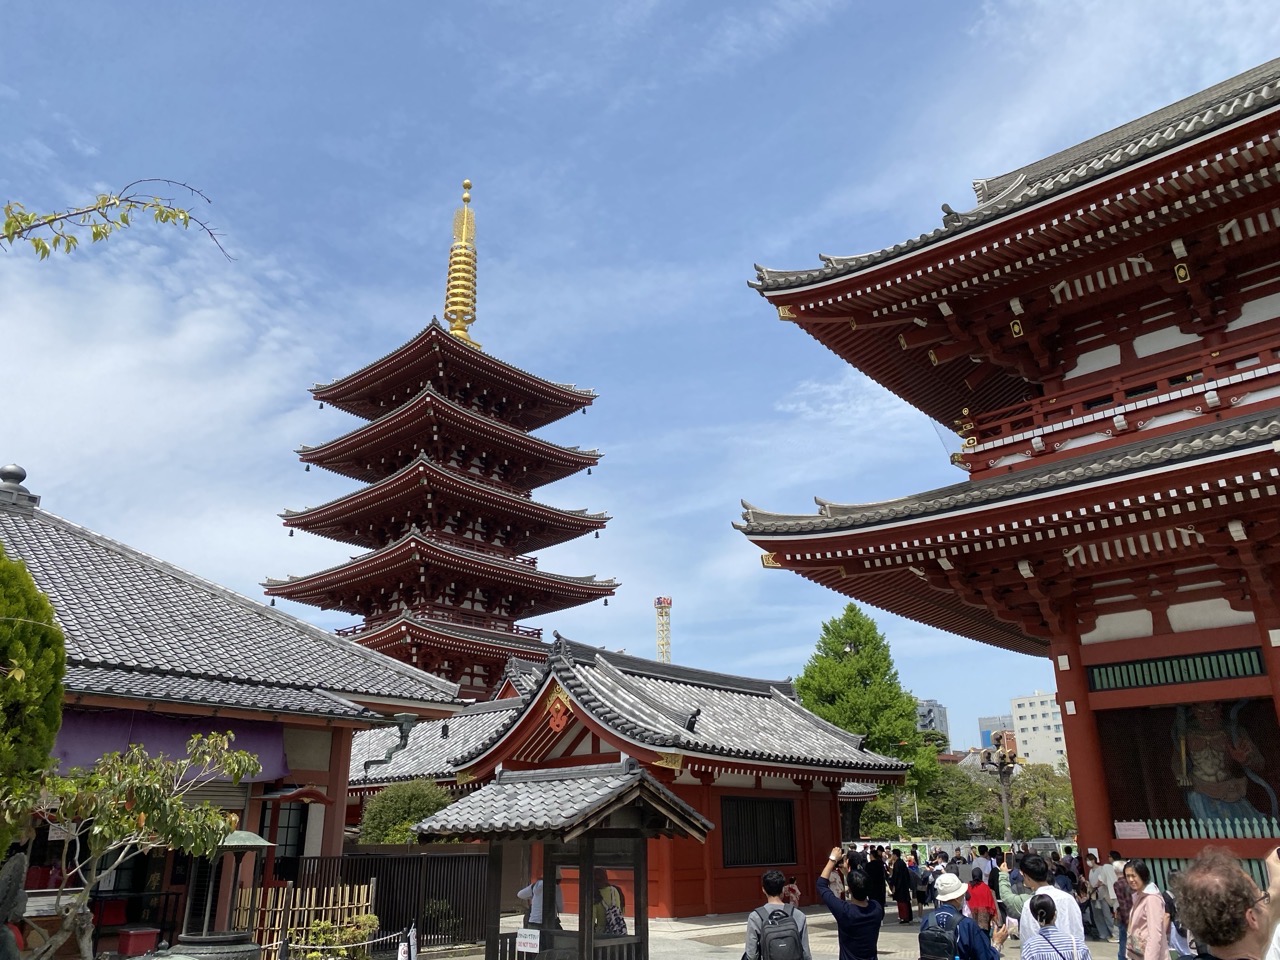 The temple and pagoda at Asakusa